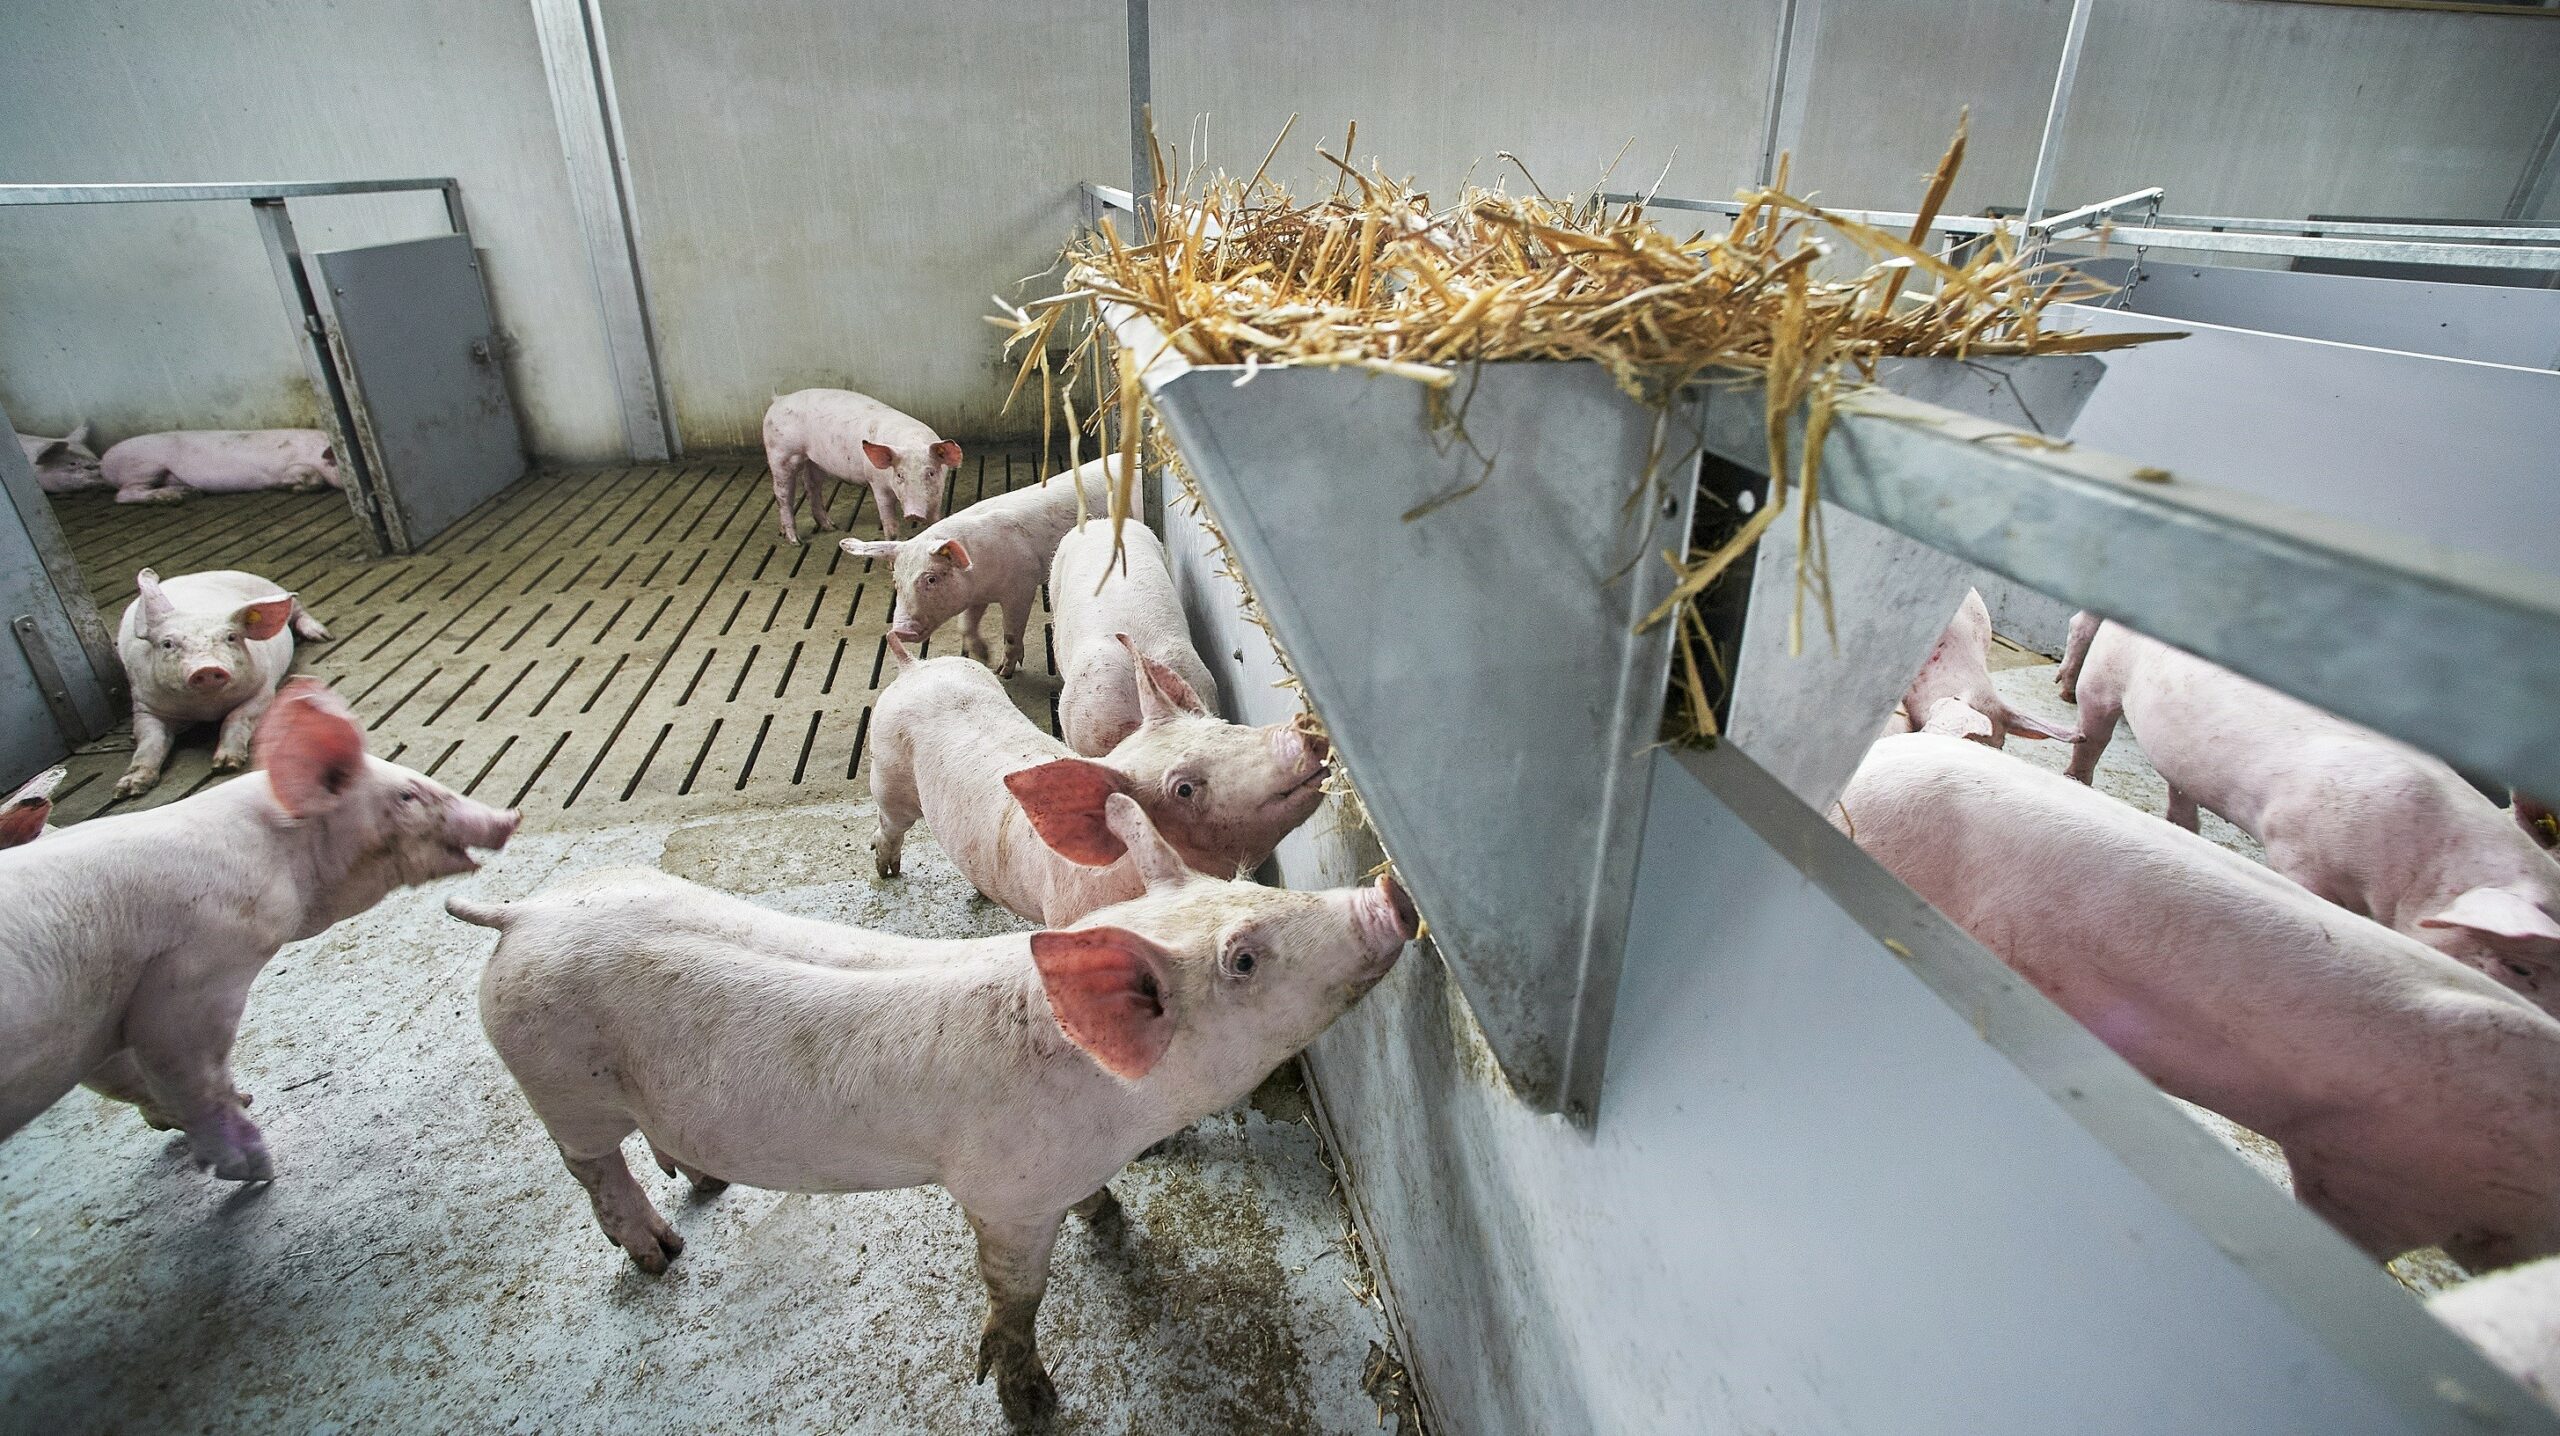 Kartrekker Vion maakt CO2-footprint in de varkensvleesketen inzichtelijk en transparant